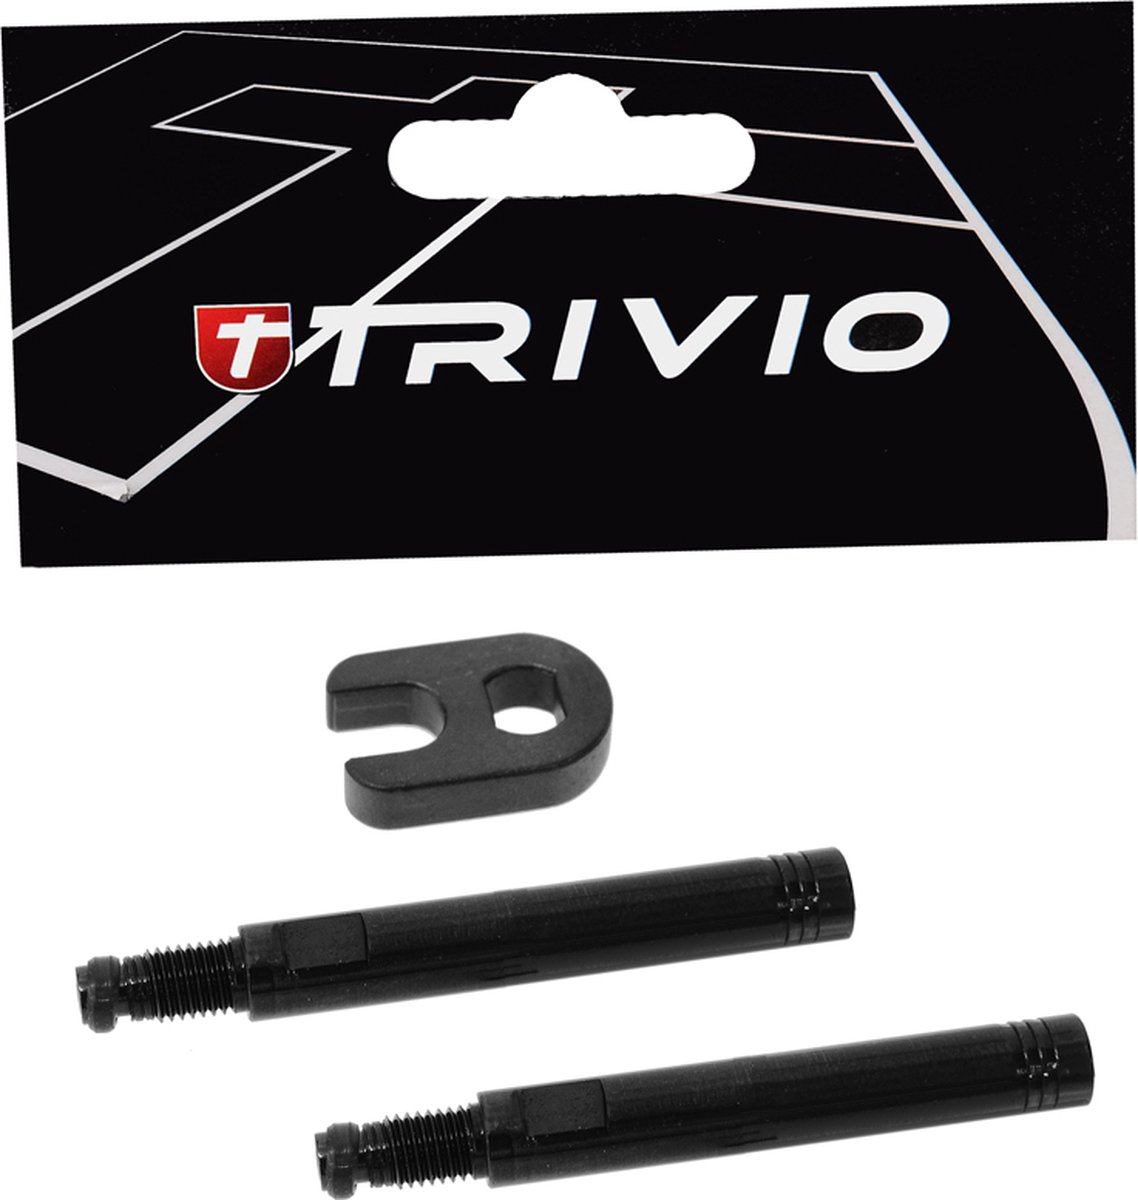 Trivio - Ventielverlenger Set Zwart 40MM Inclusief Gereedschap